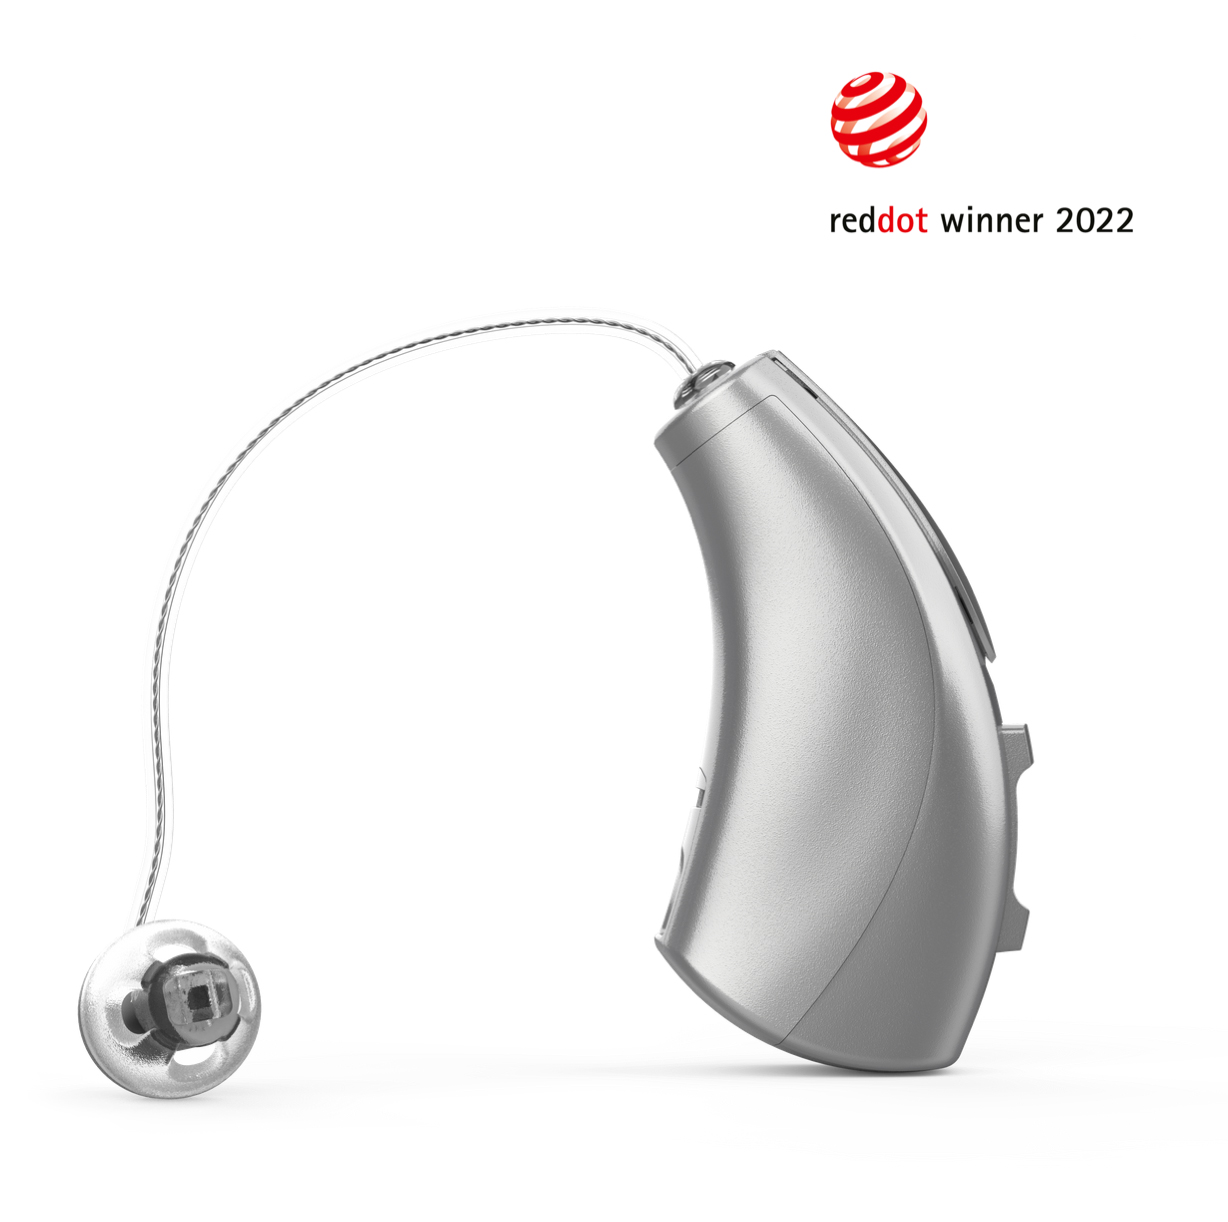 aureos-hoergeraet-produktdesign-reddot-winner-2022